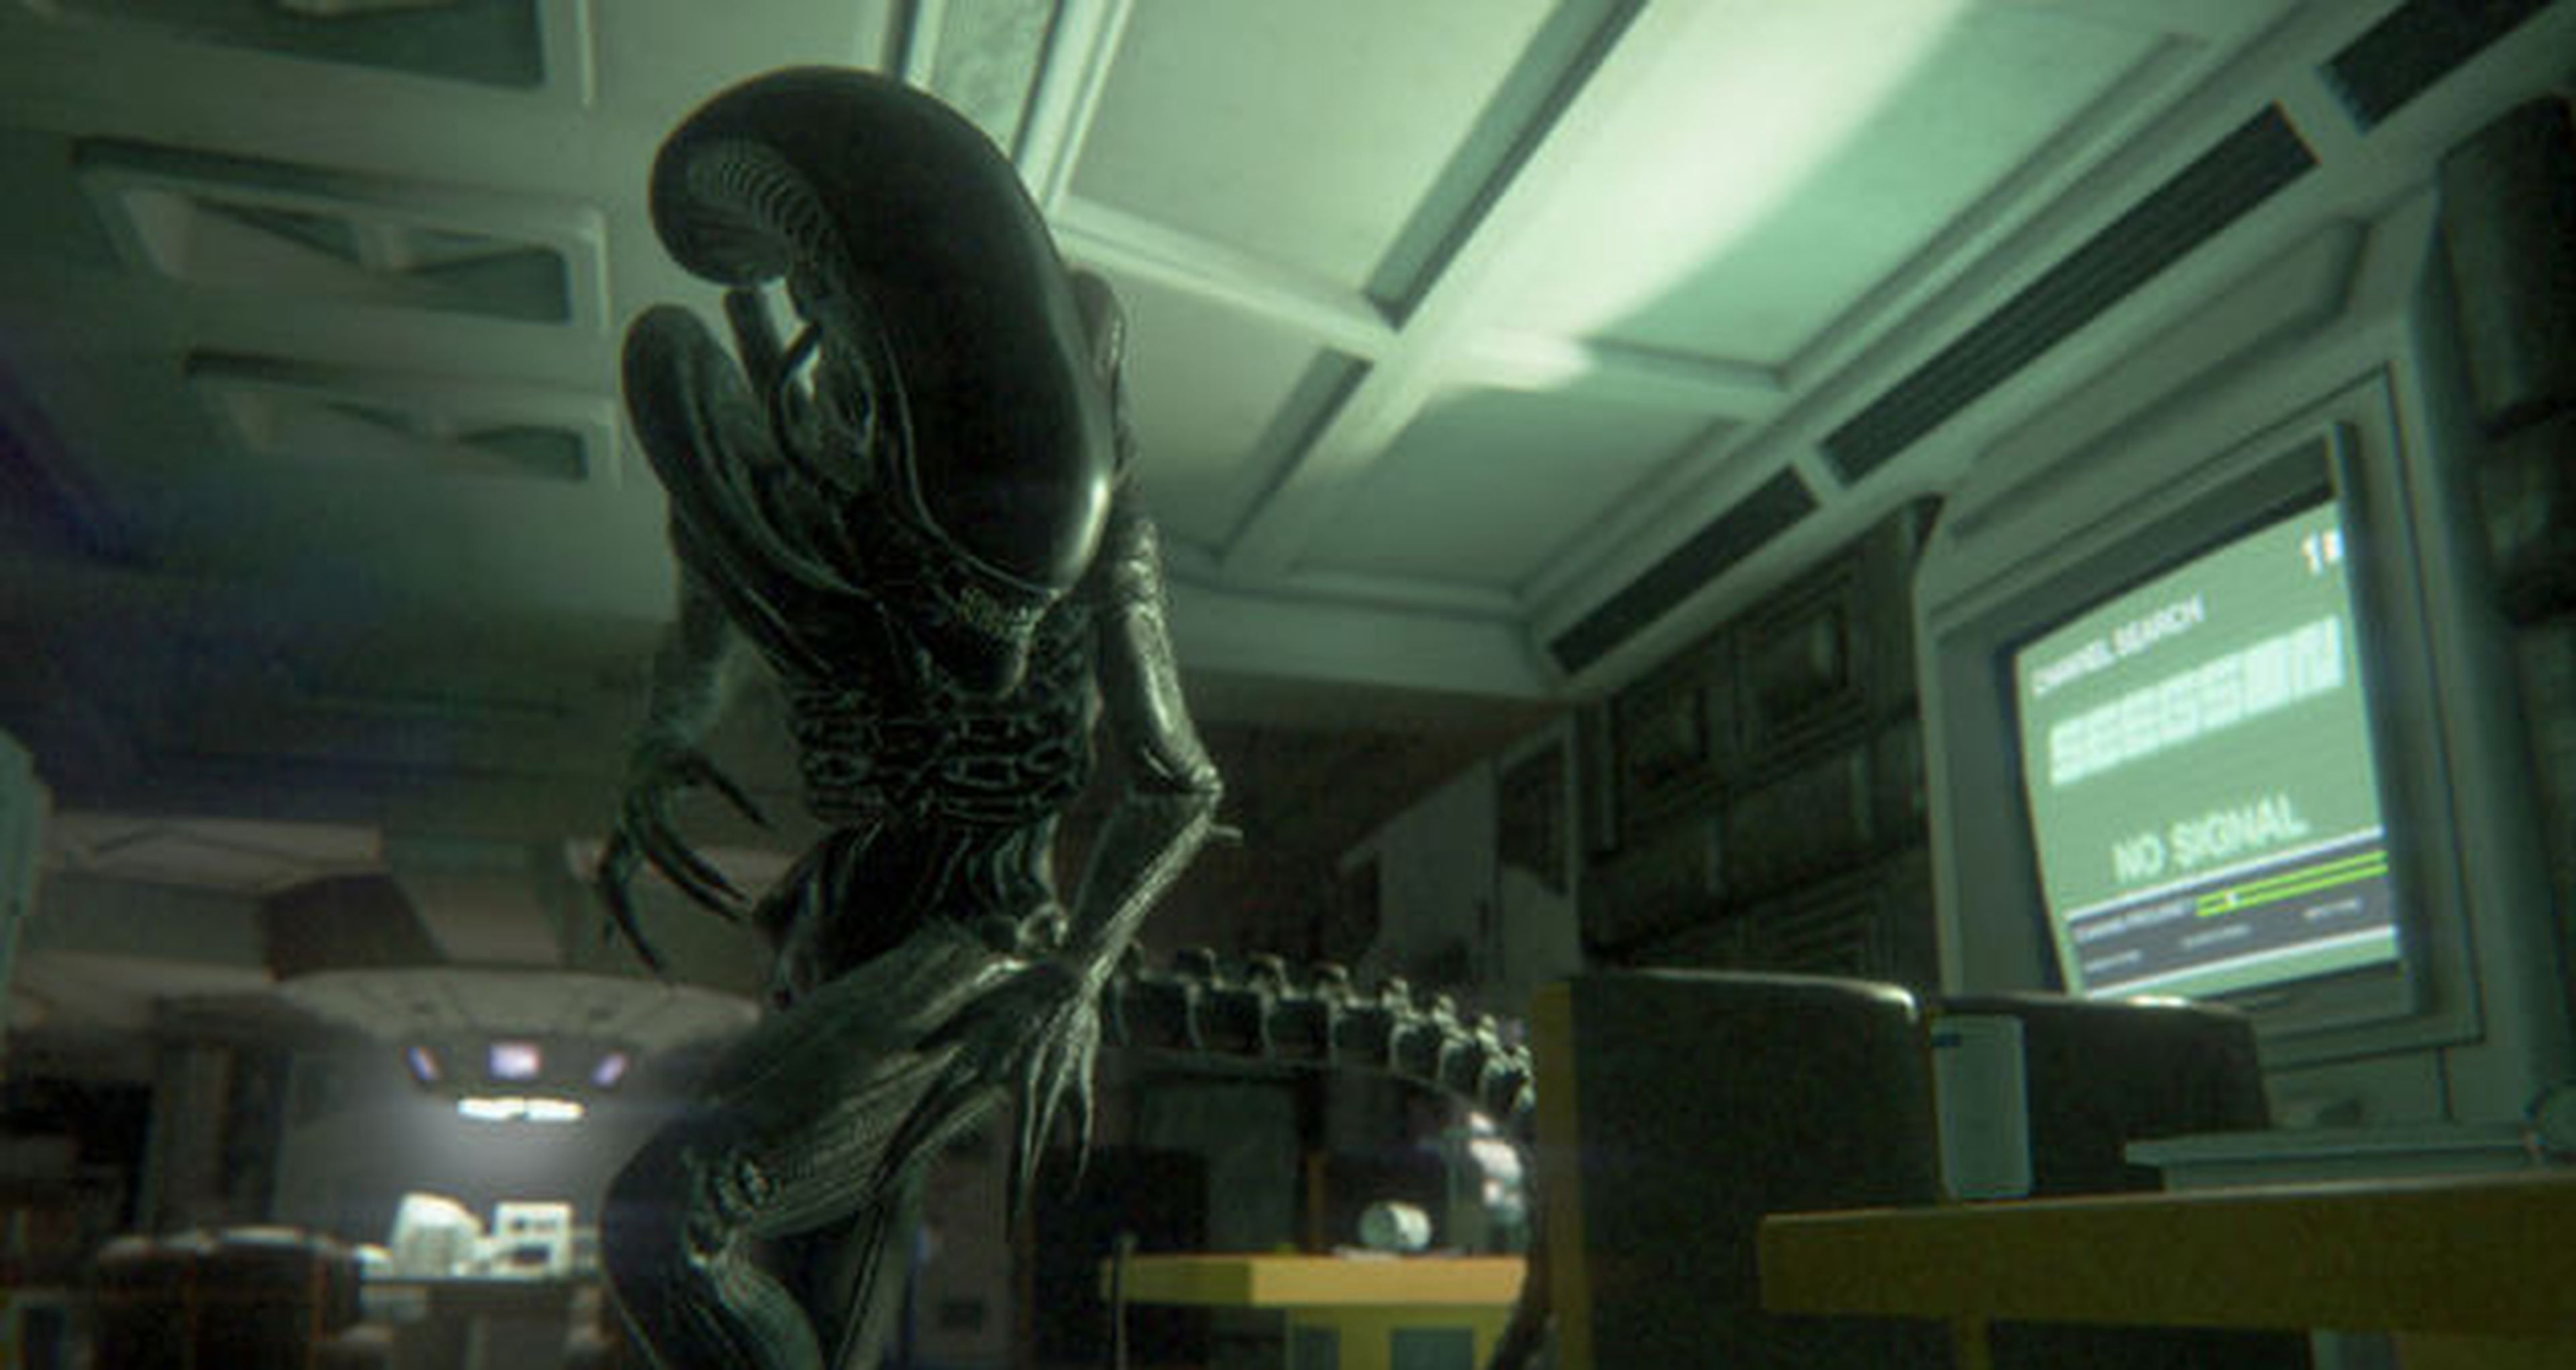 Alien Isolation confirma sus requisitos mínimos y recomendados en PC